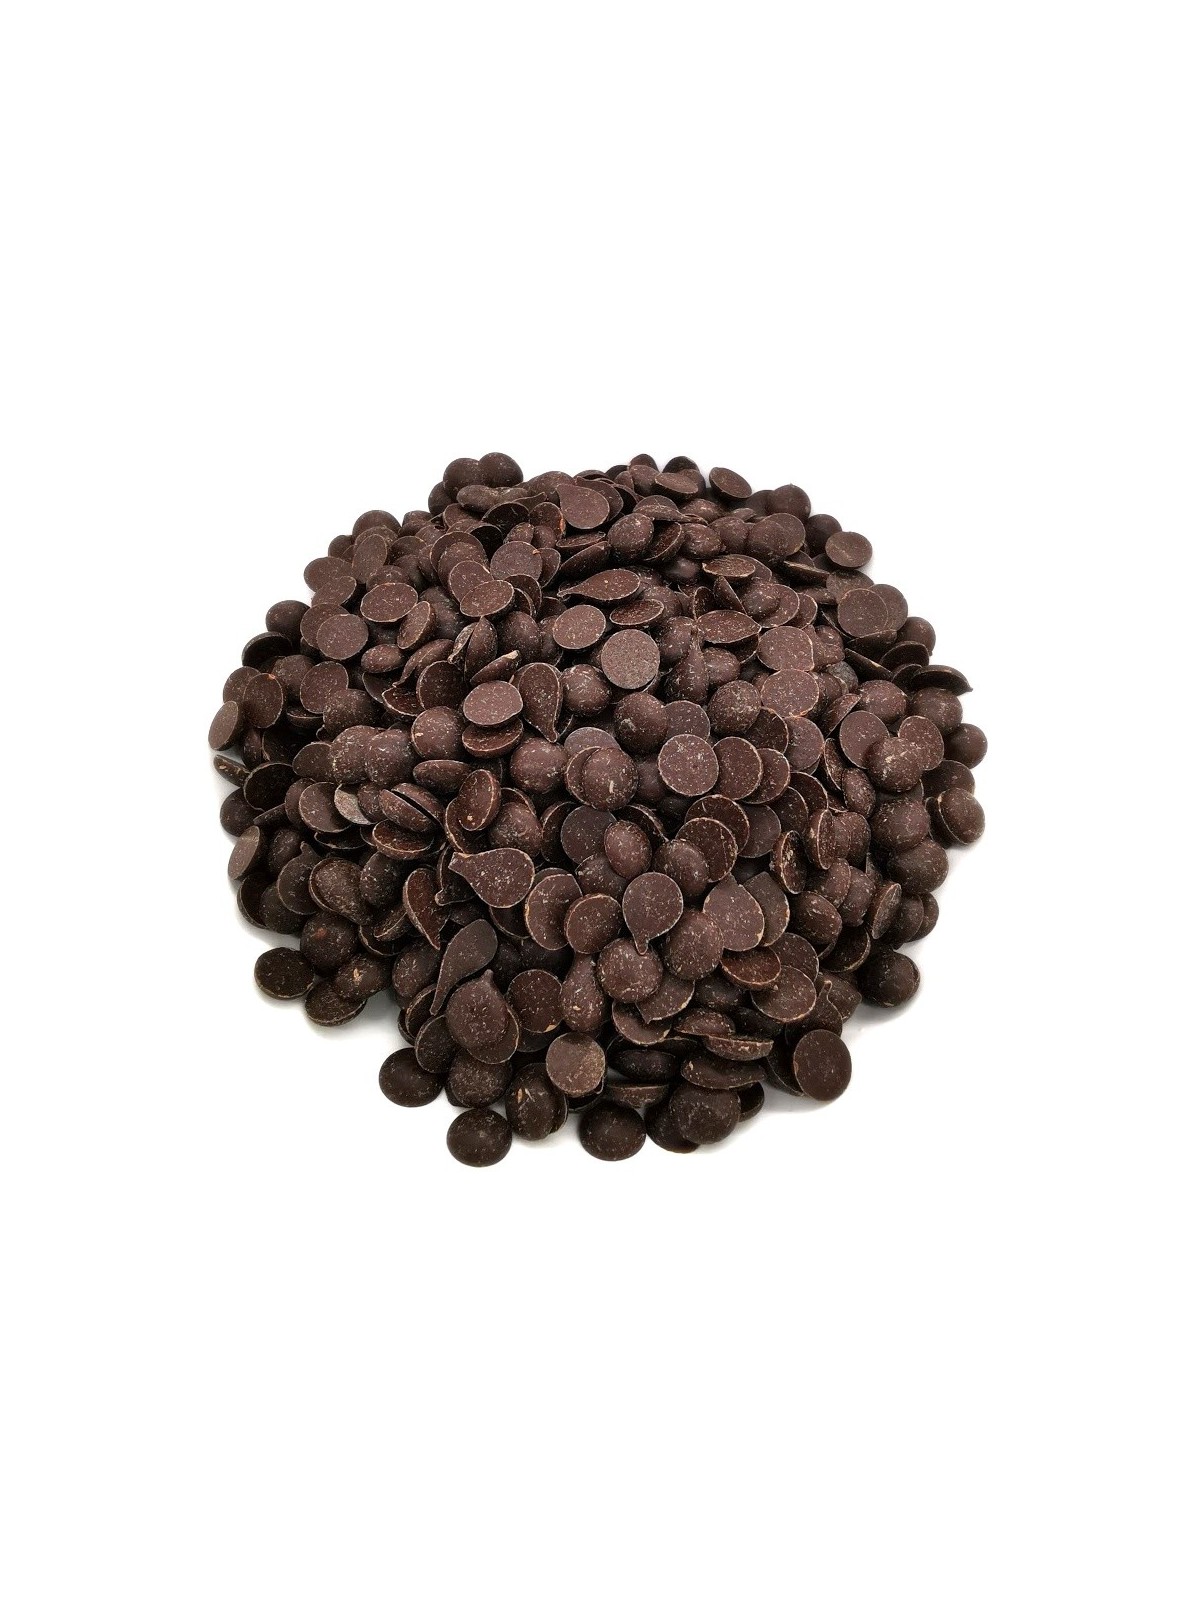 Dunkle Schokolade 60% Samen - dark discs - 500 g